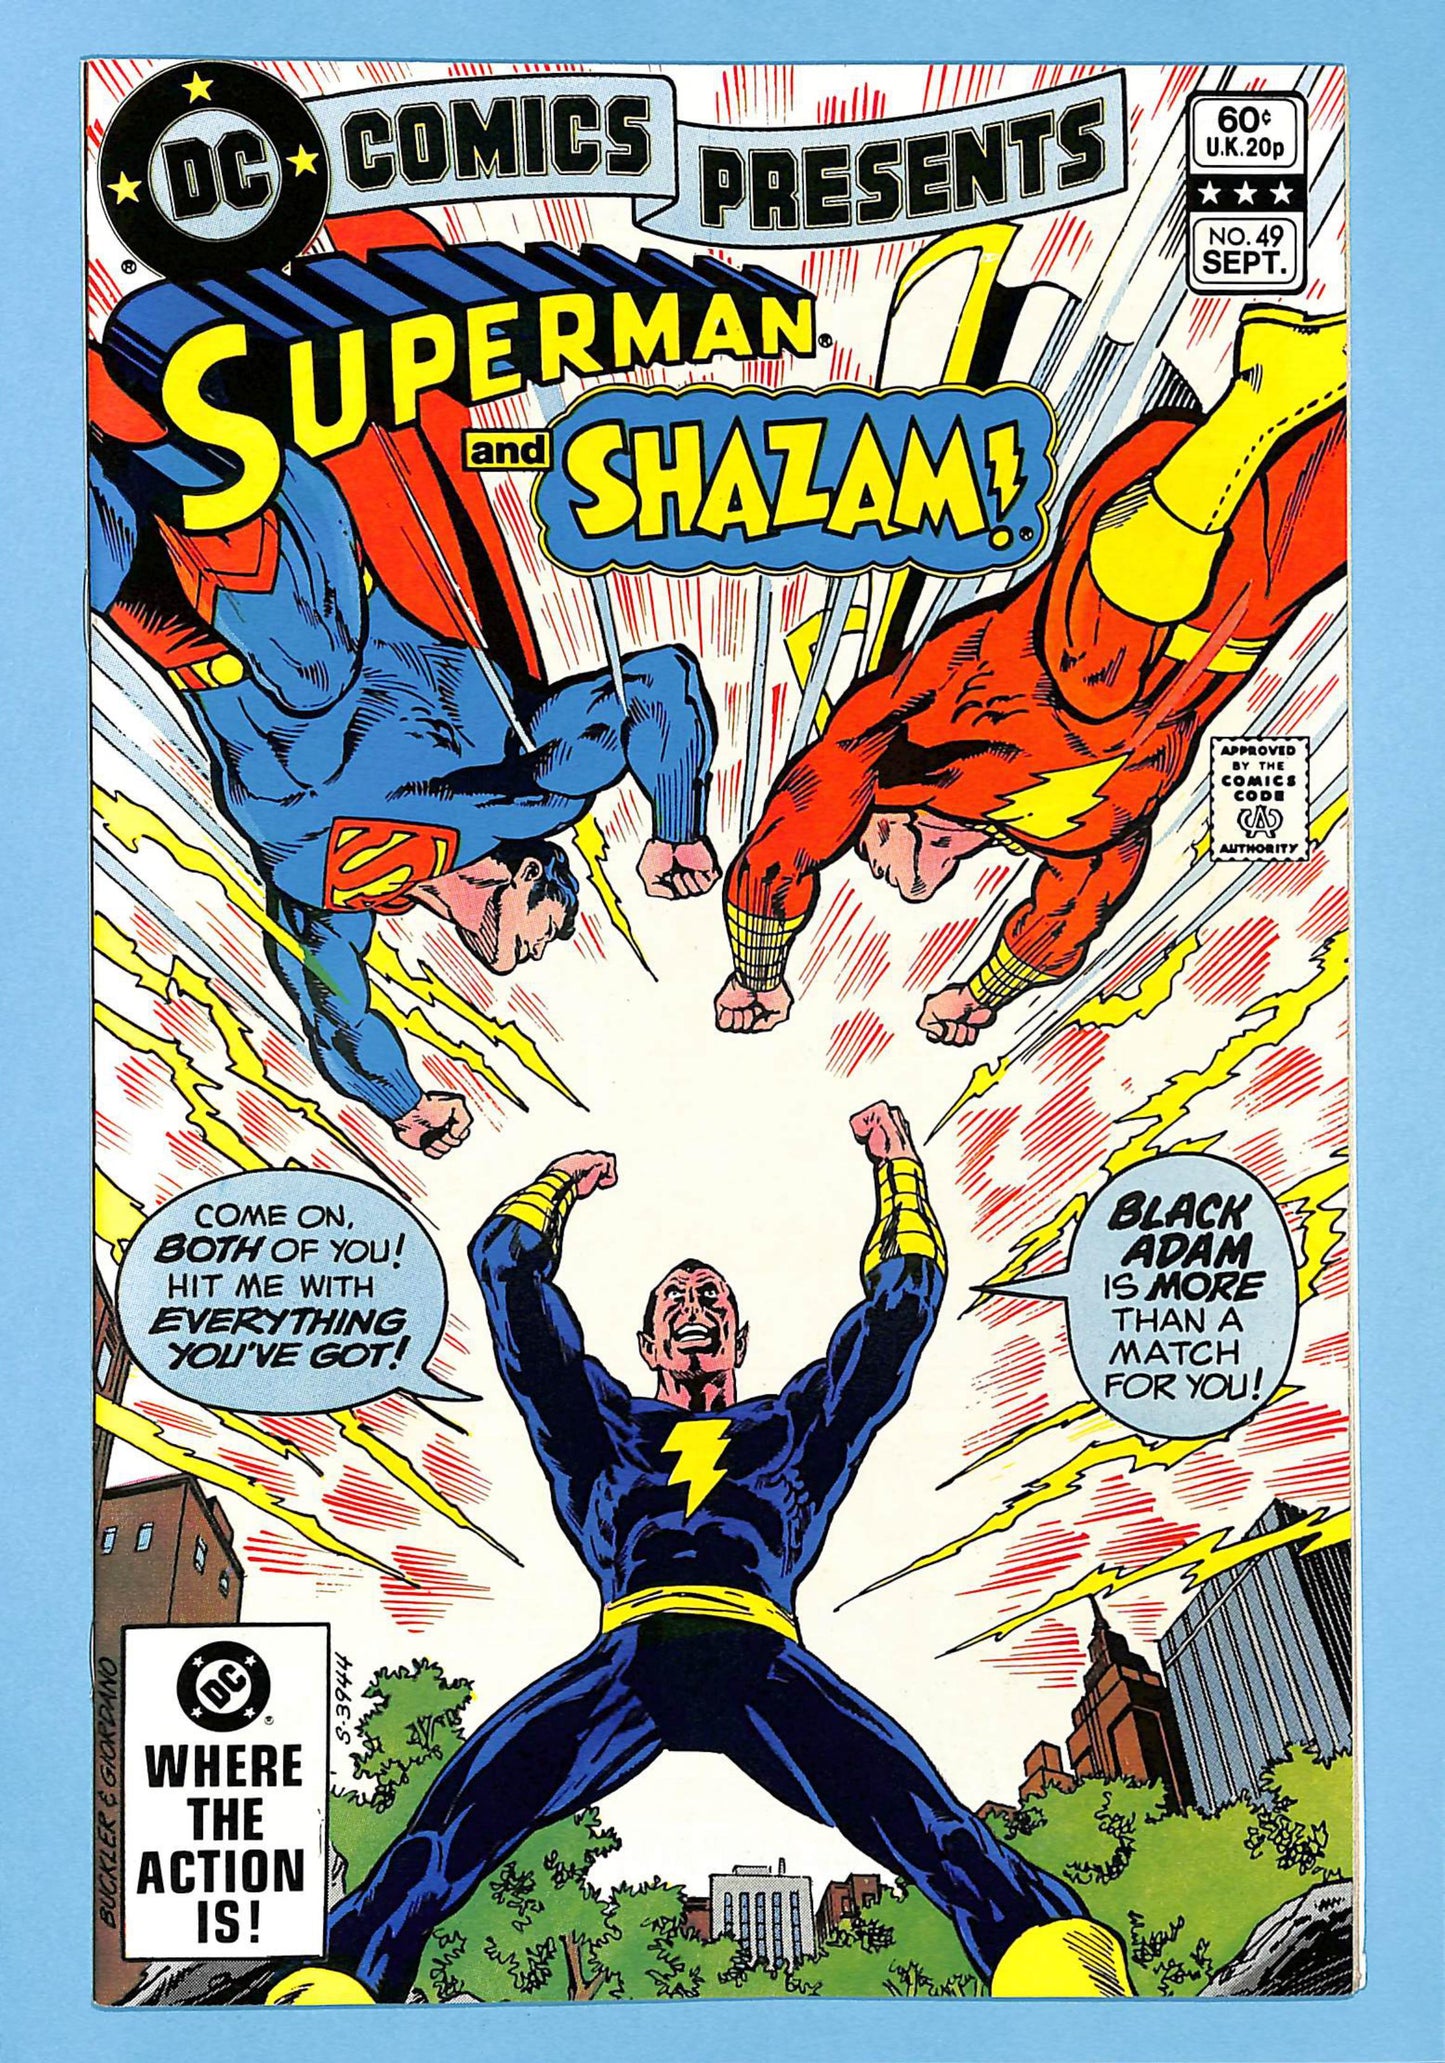 DC Comics Presents #49 Superman and Shazam vs Black Adam